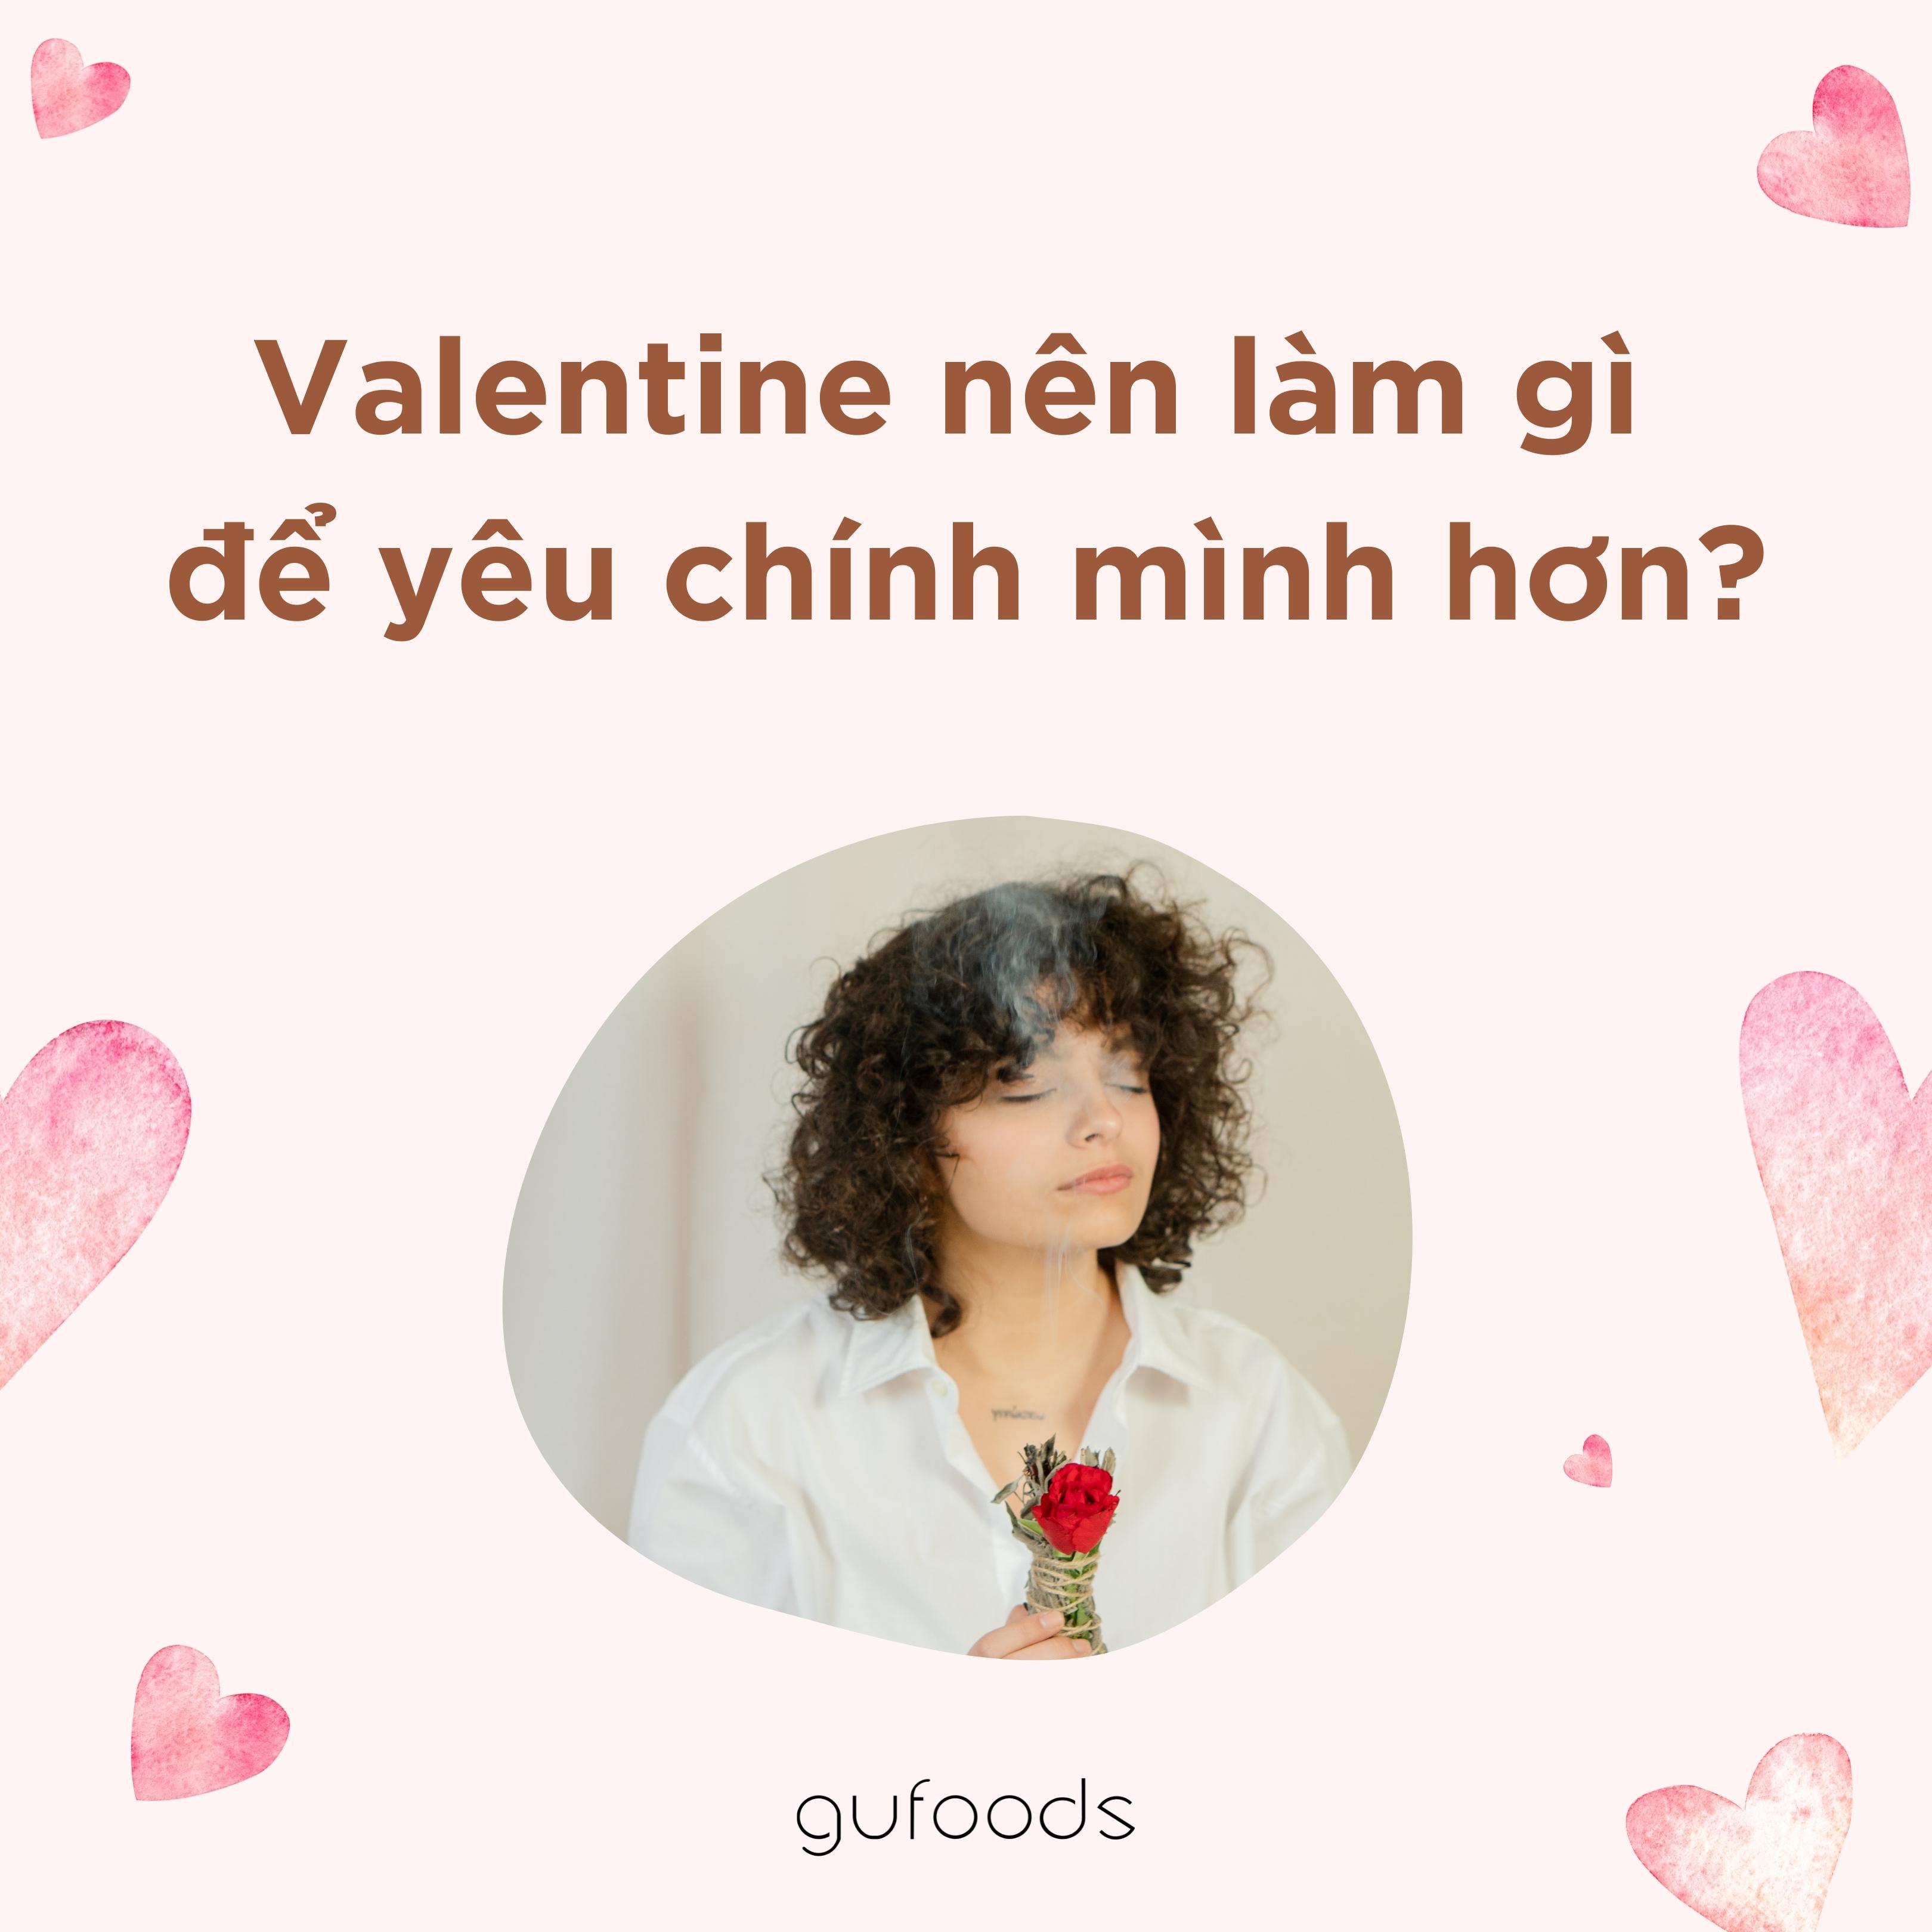 Valentine nên làm gì để yêu chính mình hơn?